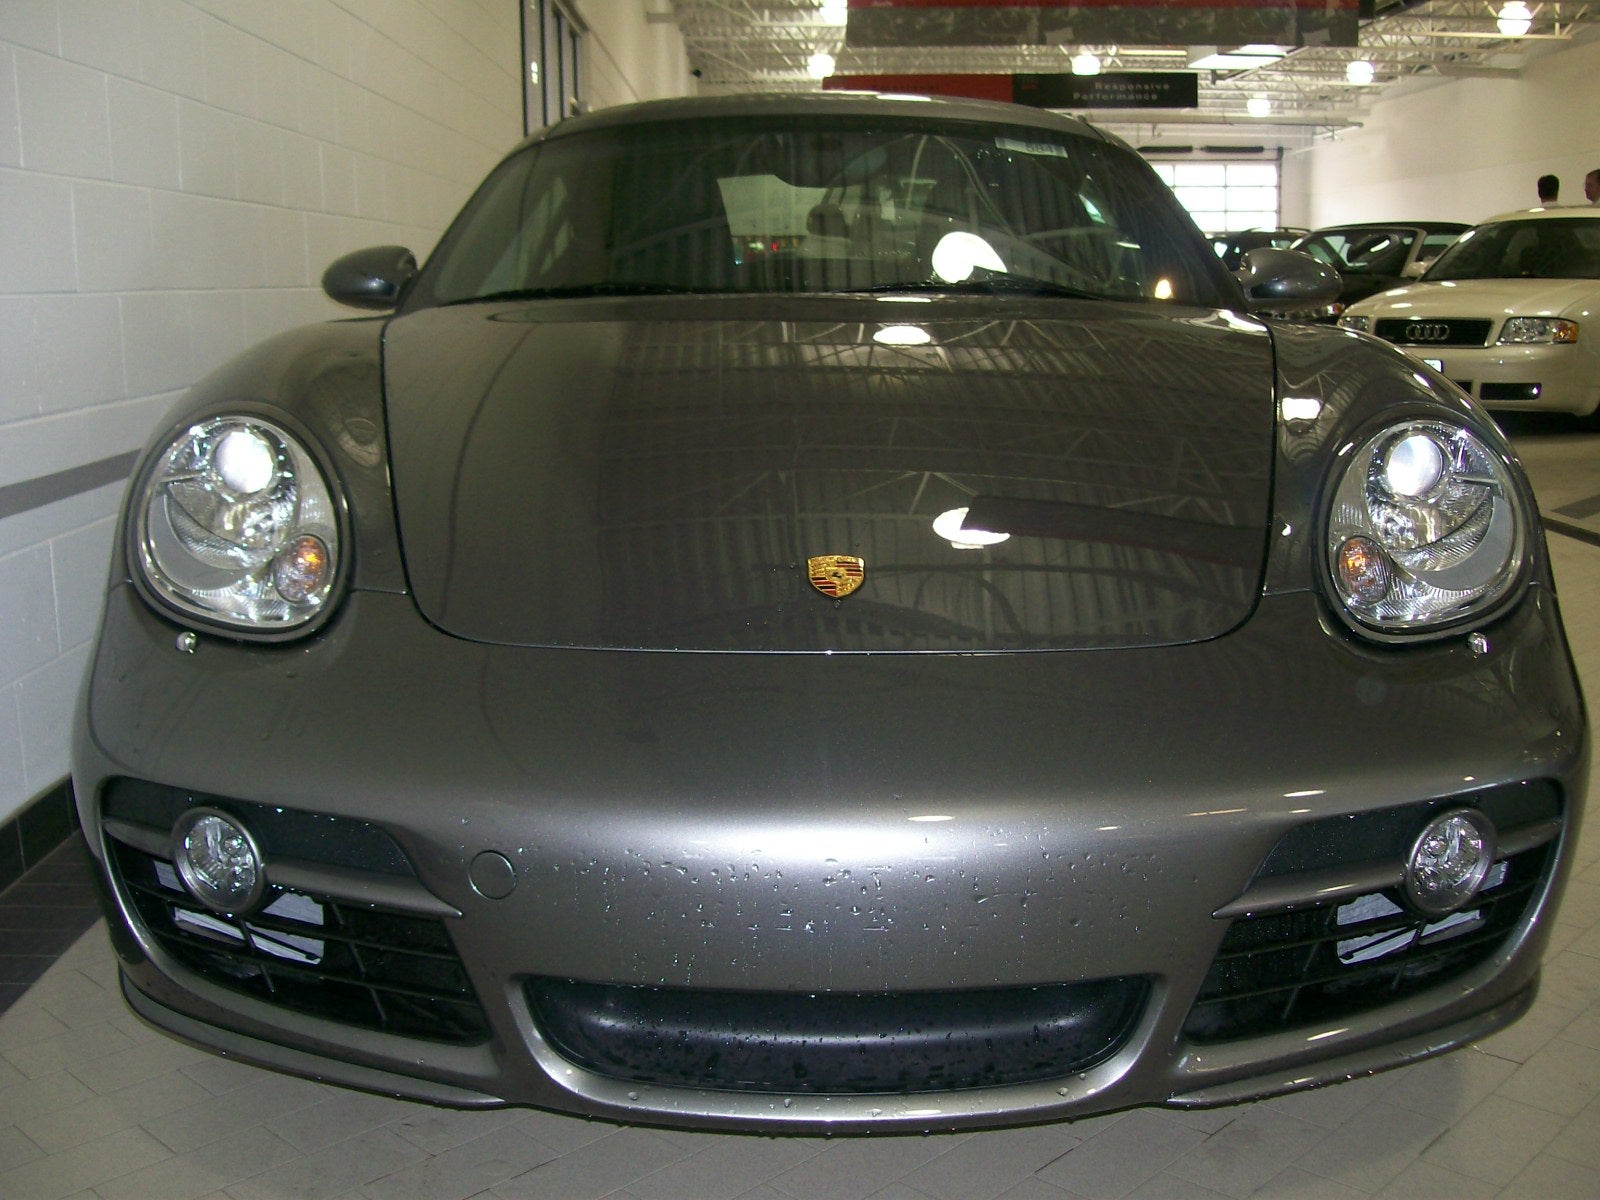 2008 Porsche Cayman - Pictures - 2008 Porsche Cayman S picture ...